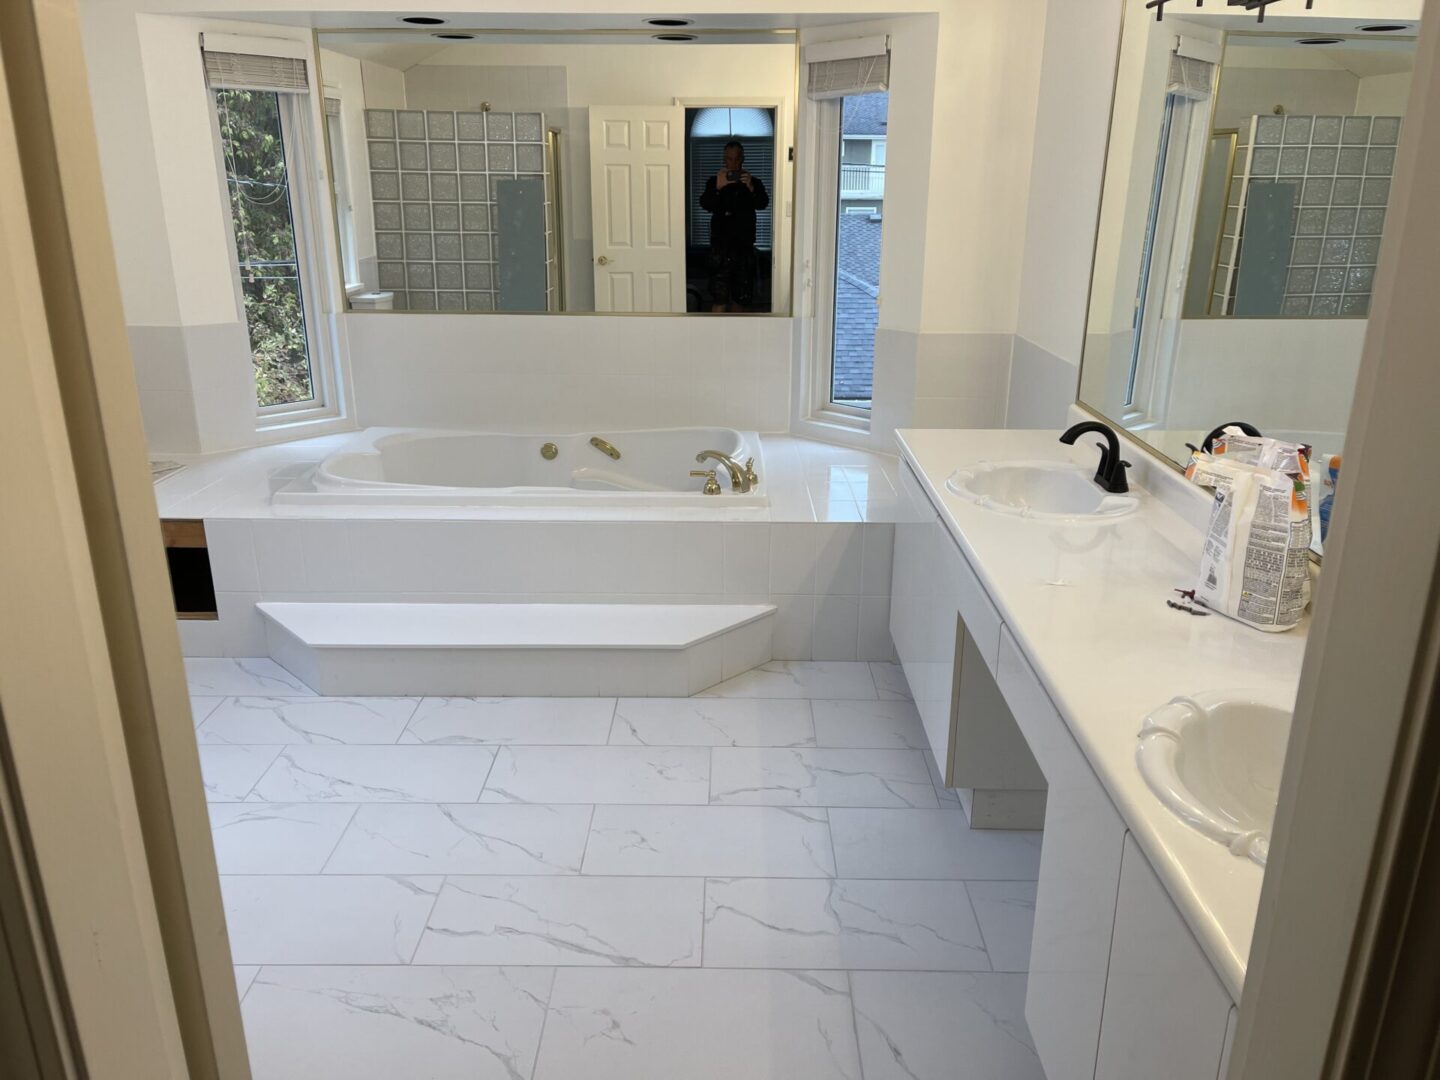 A picture of white interior bath tub